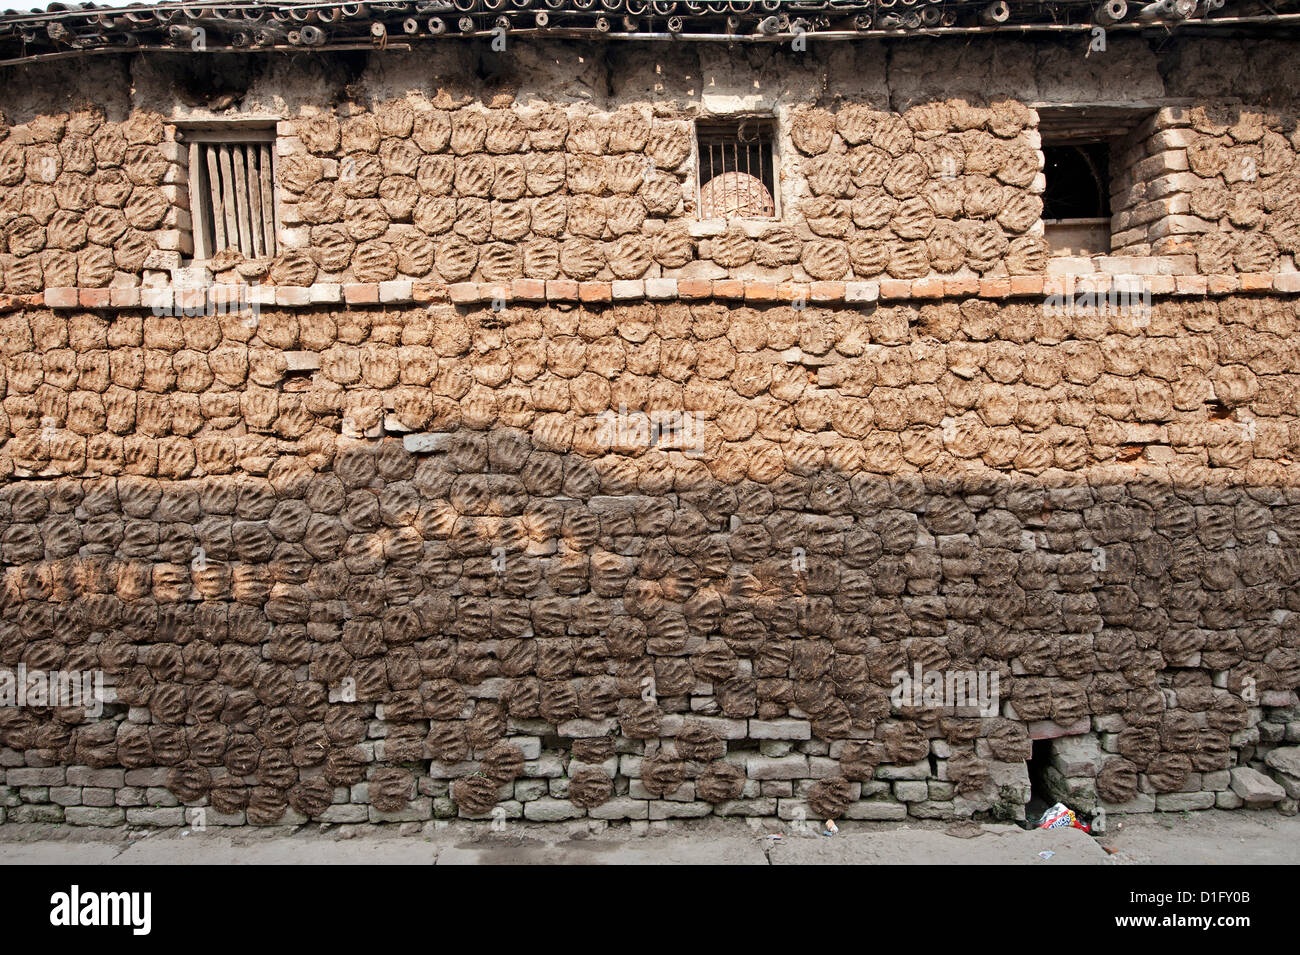 Casa de pueblo con paredes completamente cubiertas con forma de mano dung pats dejó allí a secar al sol, Sonepur, Bihar, India Foto de stock